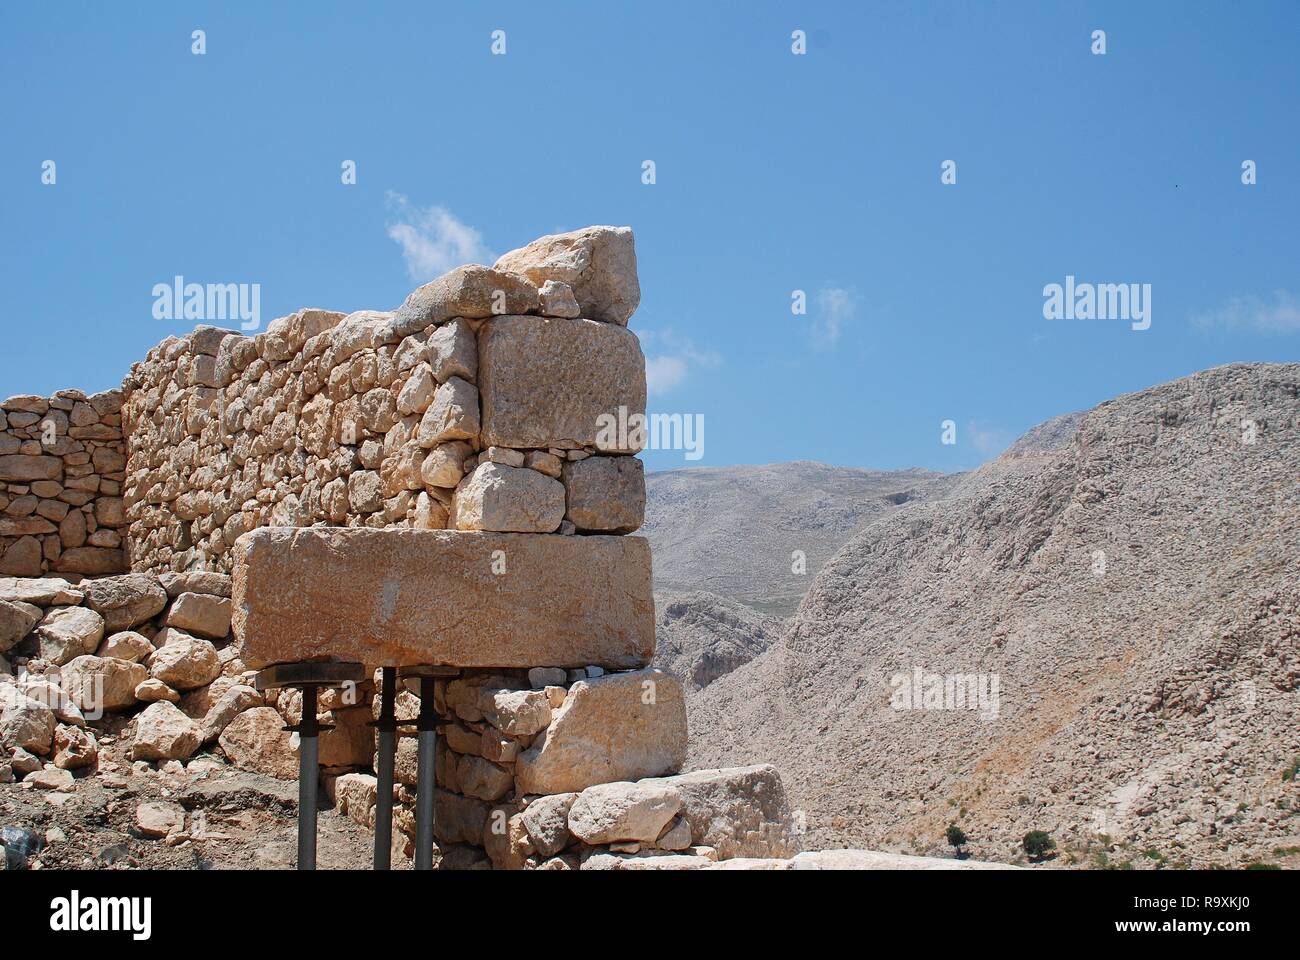 Un ancien mur de retenue dans les collines au-dessus de Chorio sur l'île grecque de Halki. Construit dans le style isodomic, le mur date du 4ème siècle avant JC. Banque D'Images